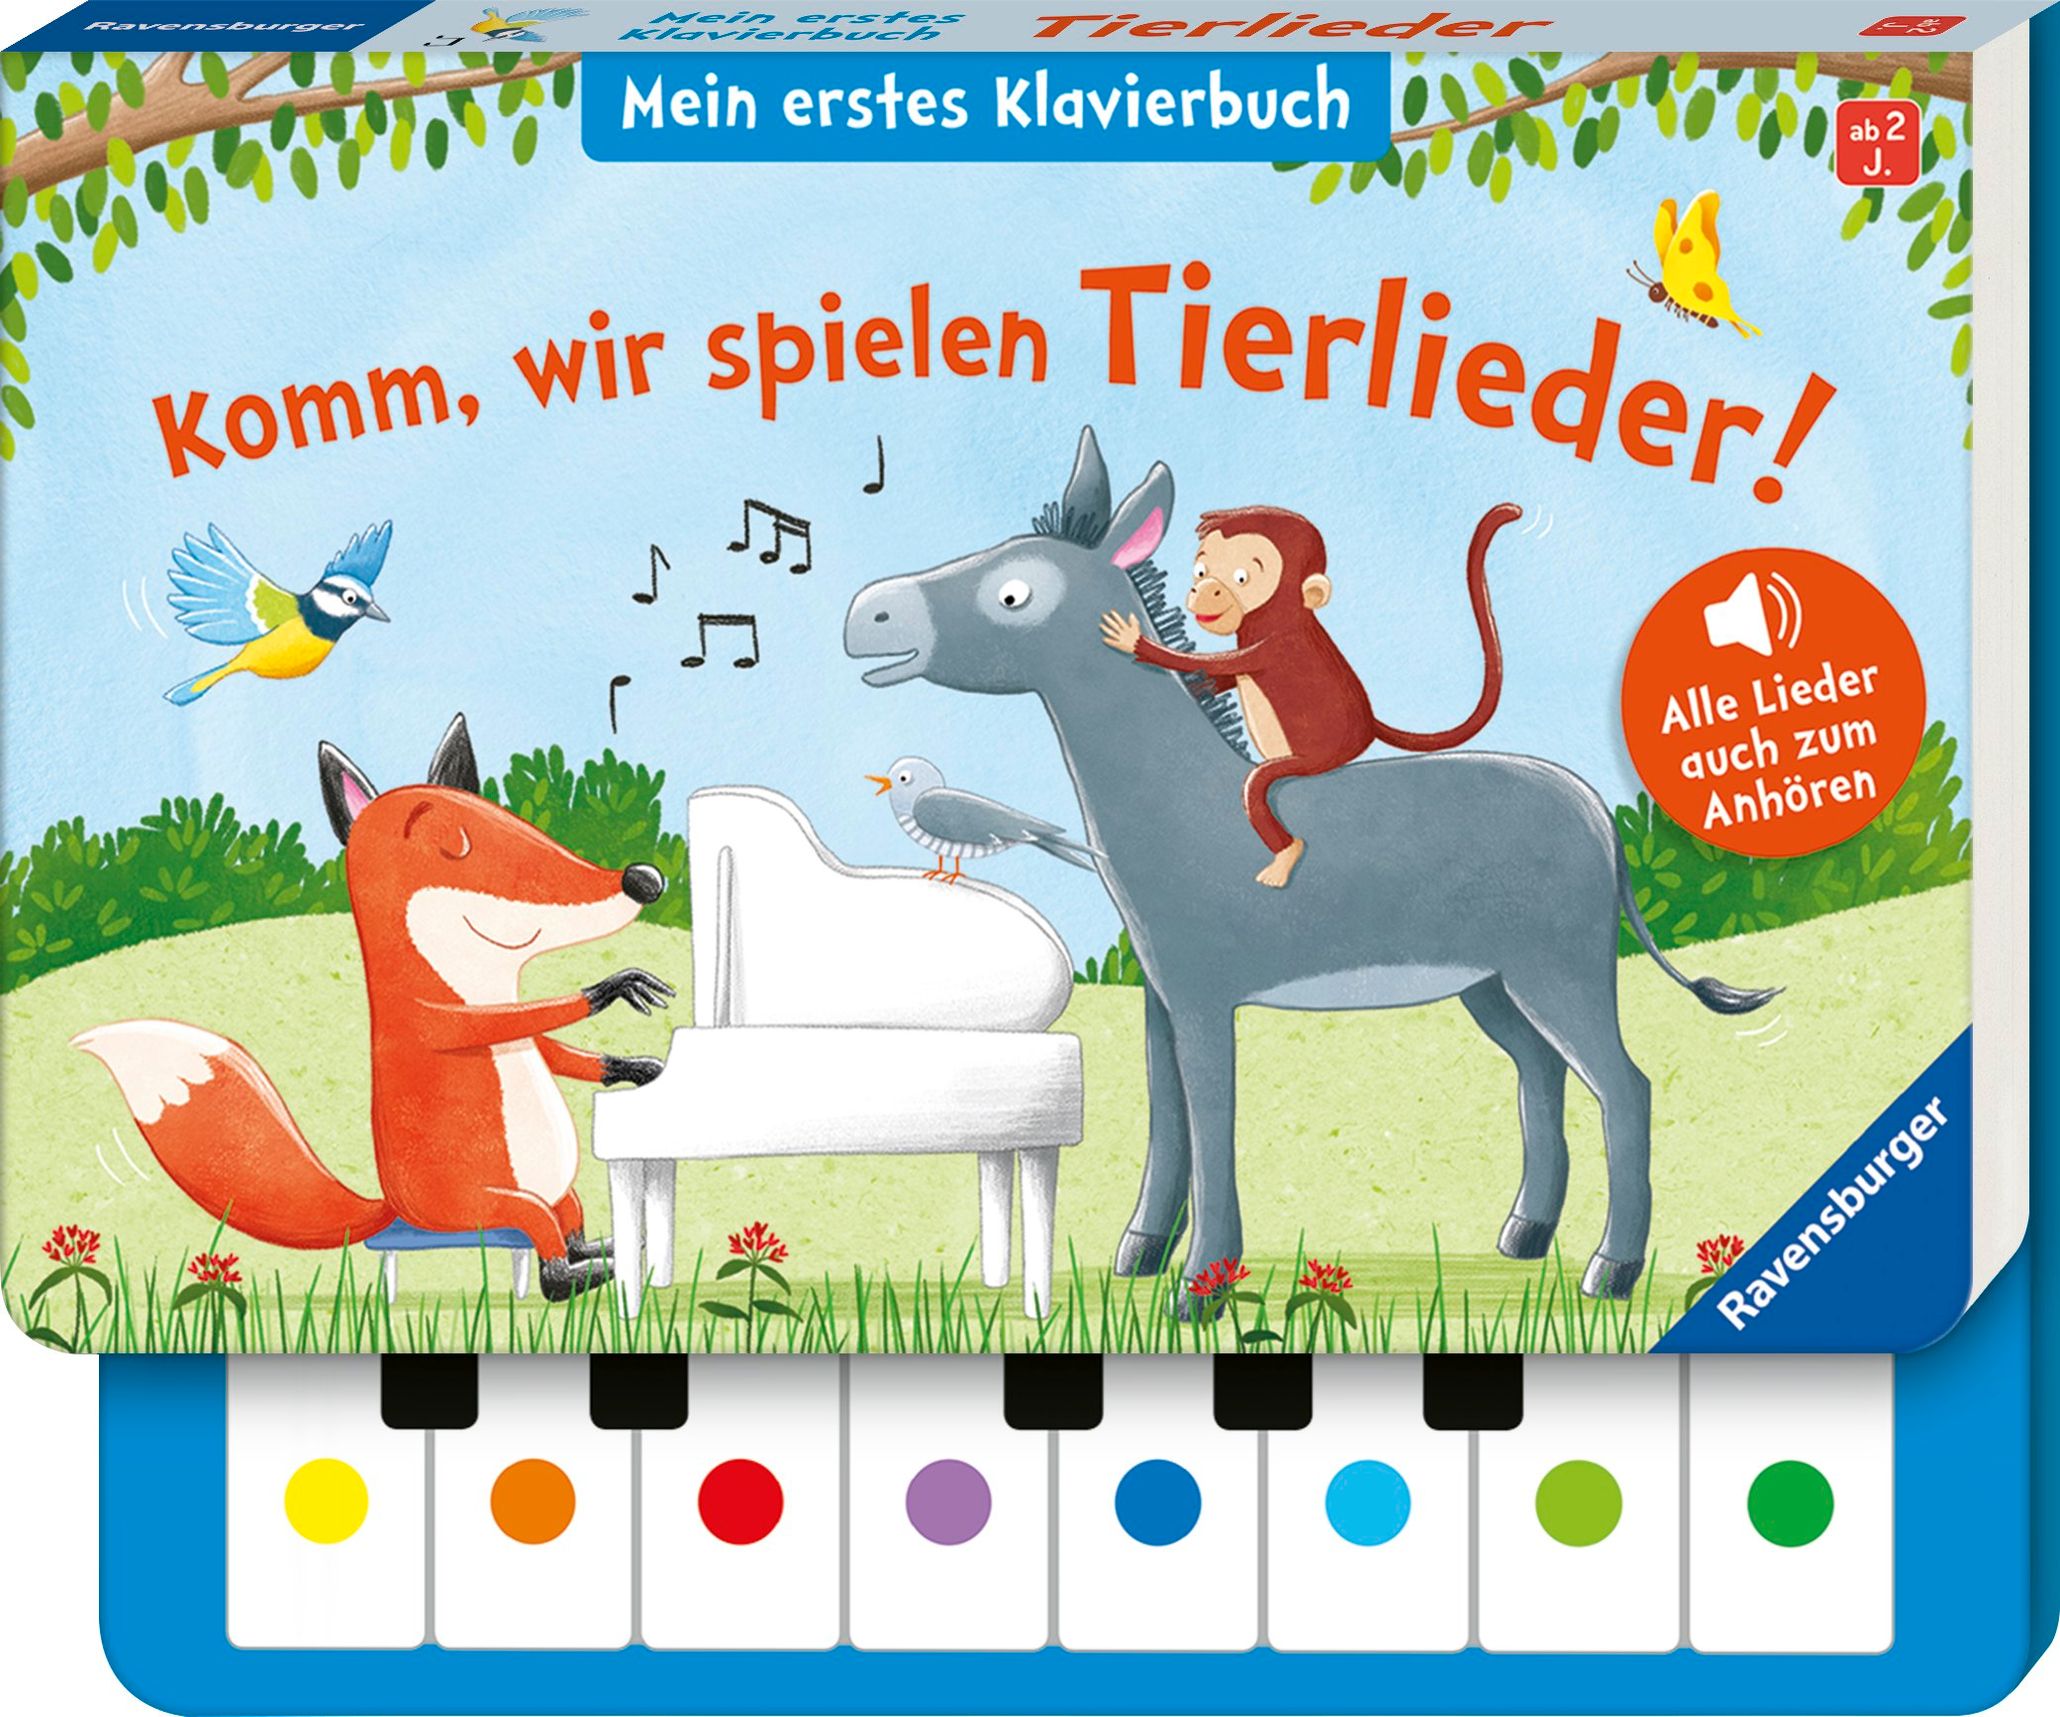 Komm, wir spielen Tierlieder! Mein erstes Klavierbuch, m. Klaviertastatur  Buch versandkostenfrei bei Weltbild.de bestellen